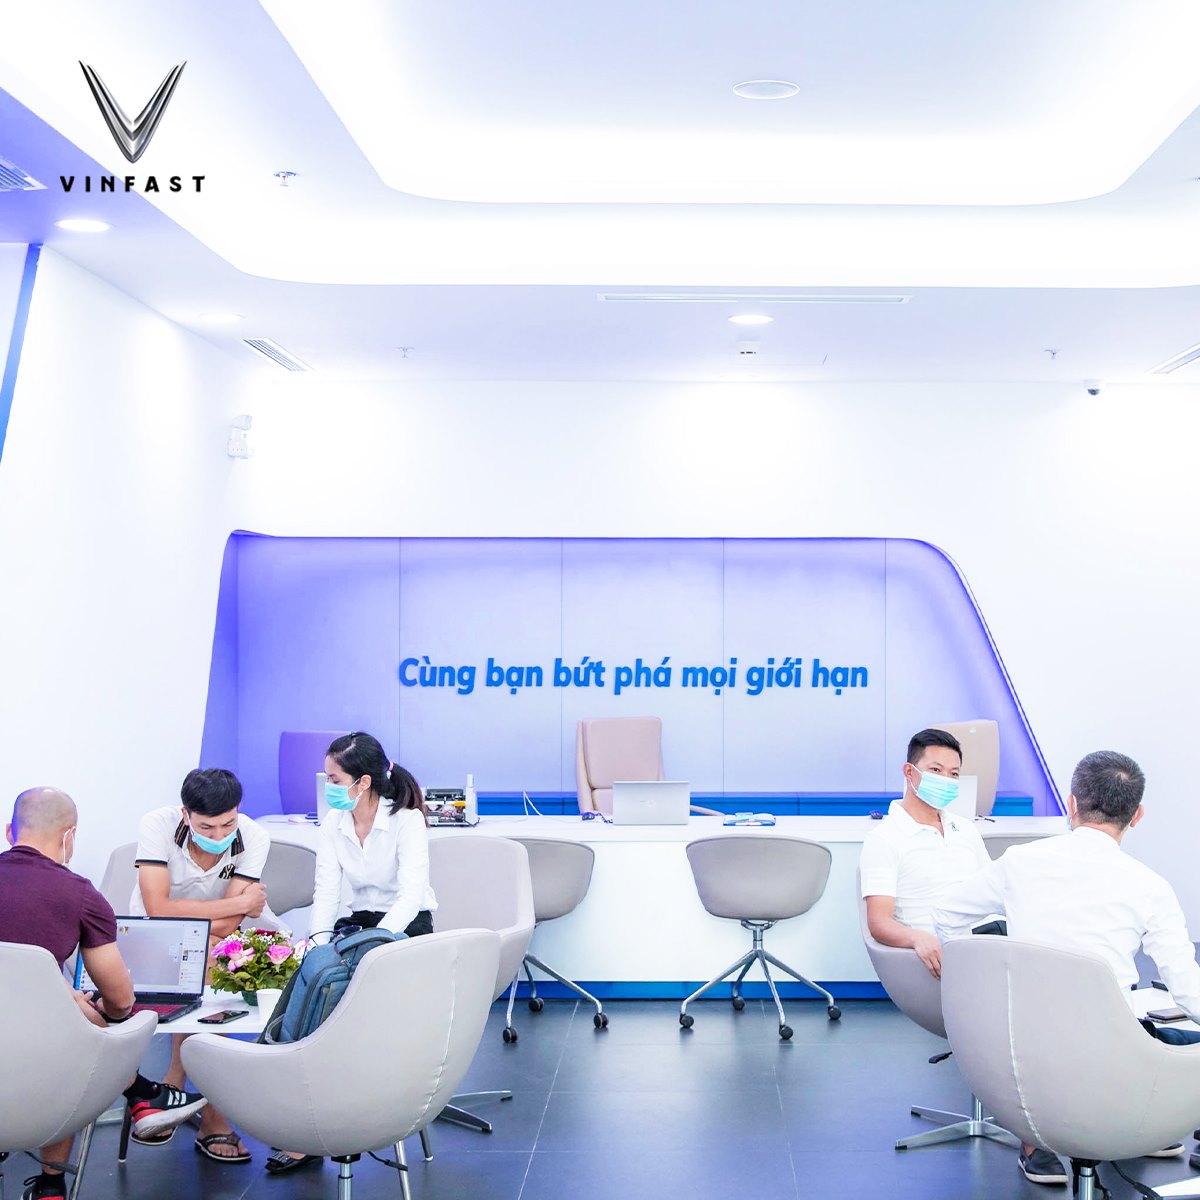 Đại lý VinFast Hạ Long Quảng Ninh xuất hiện với dòng sản phẩm VinFast 2024 Hạ Long, với thiết kế hiện đại, tiện nghi và tính năng cao cấp. Khách hàng sẽ được trải nghiệm trọn vẹn tính năng điện tử, camera 360 độ, hệ thống an toàn thông minh và nhận được nhiều chương trình ưu đãi hấp dẫn. Được công nhận là dòng xe tiêu chuẩn châu Âu với giá thành phù hợp, VinFast Hạ Long Quảng Ninh chắc chắn là sự lựa chọn tuyệt vời.